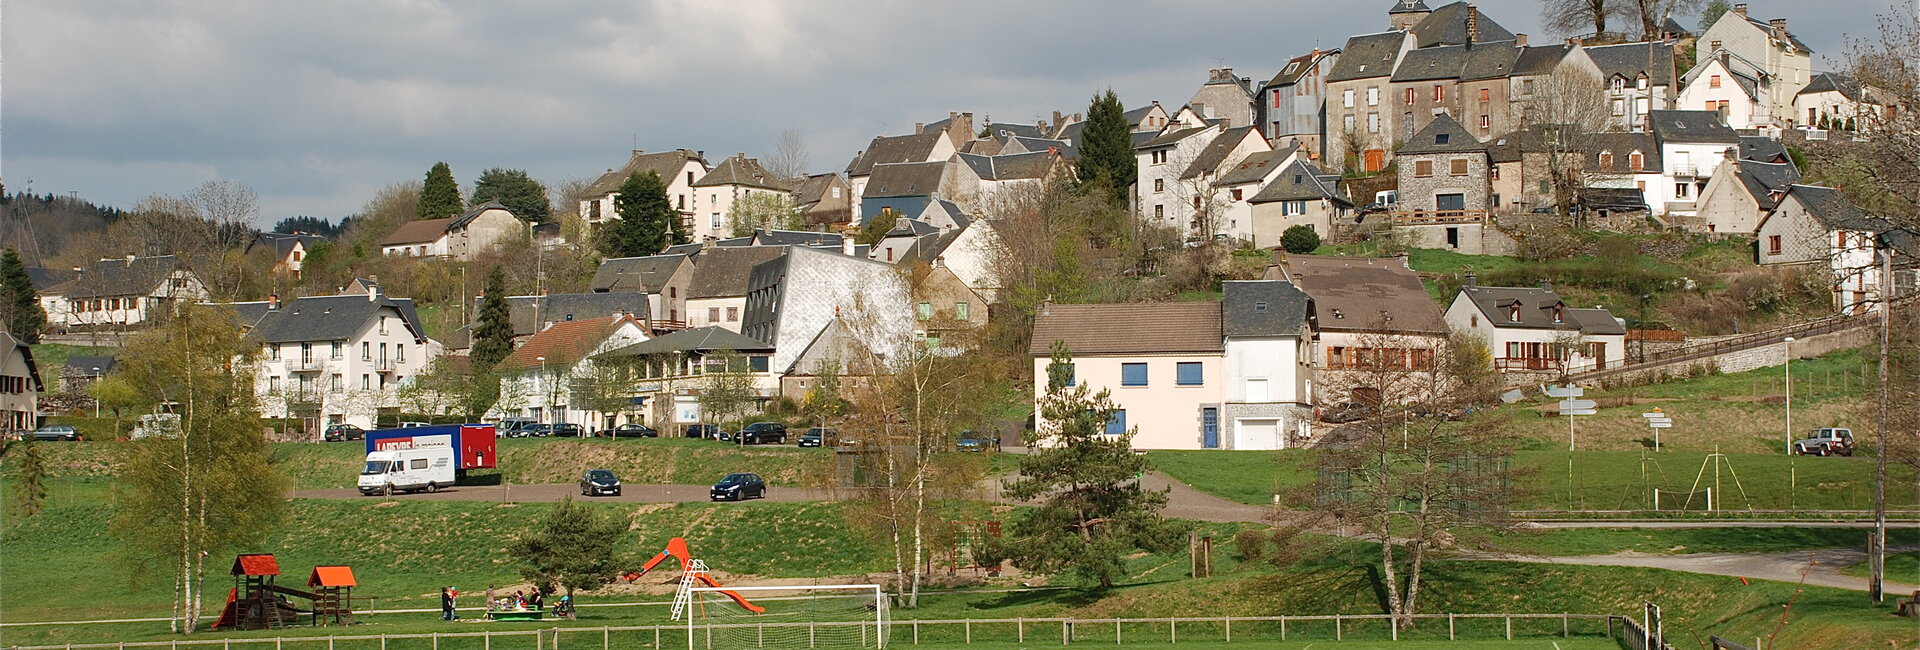 Terrain à Bâtir Lotissement Puy-de-Dôme Auvergne